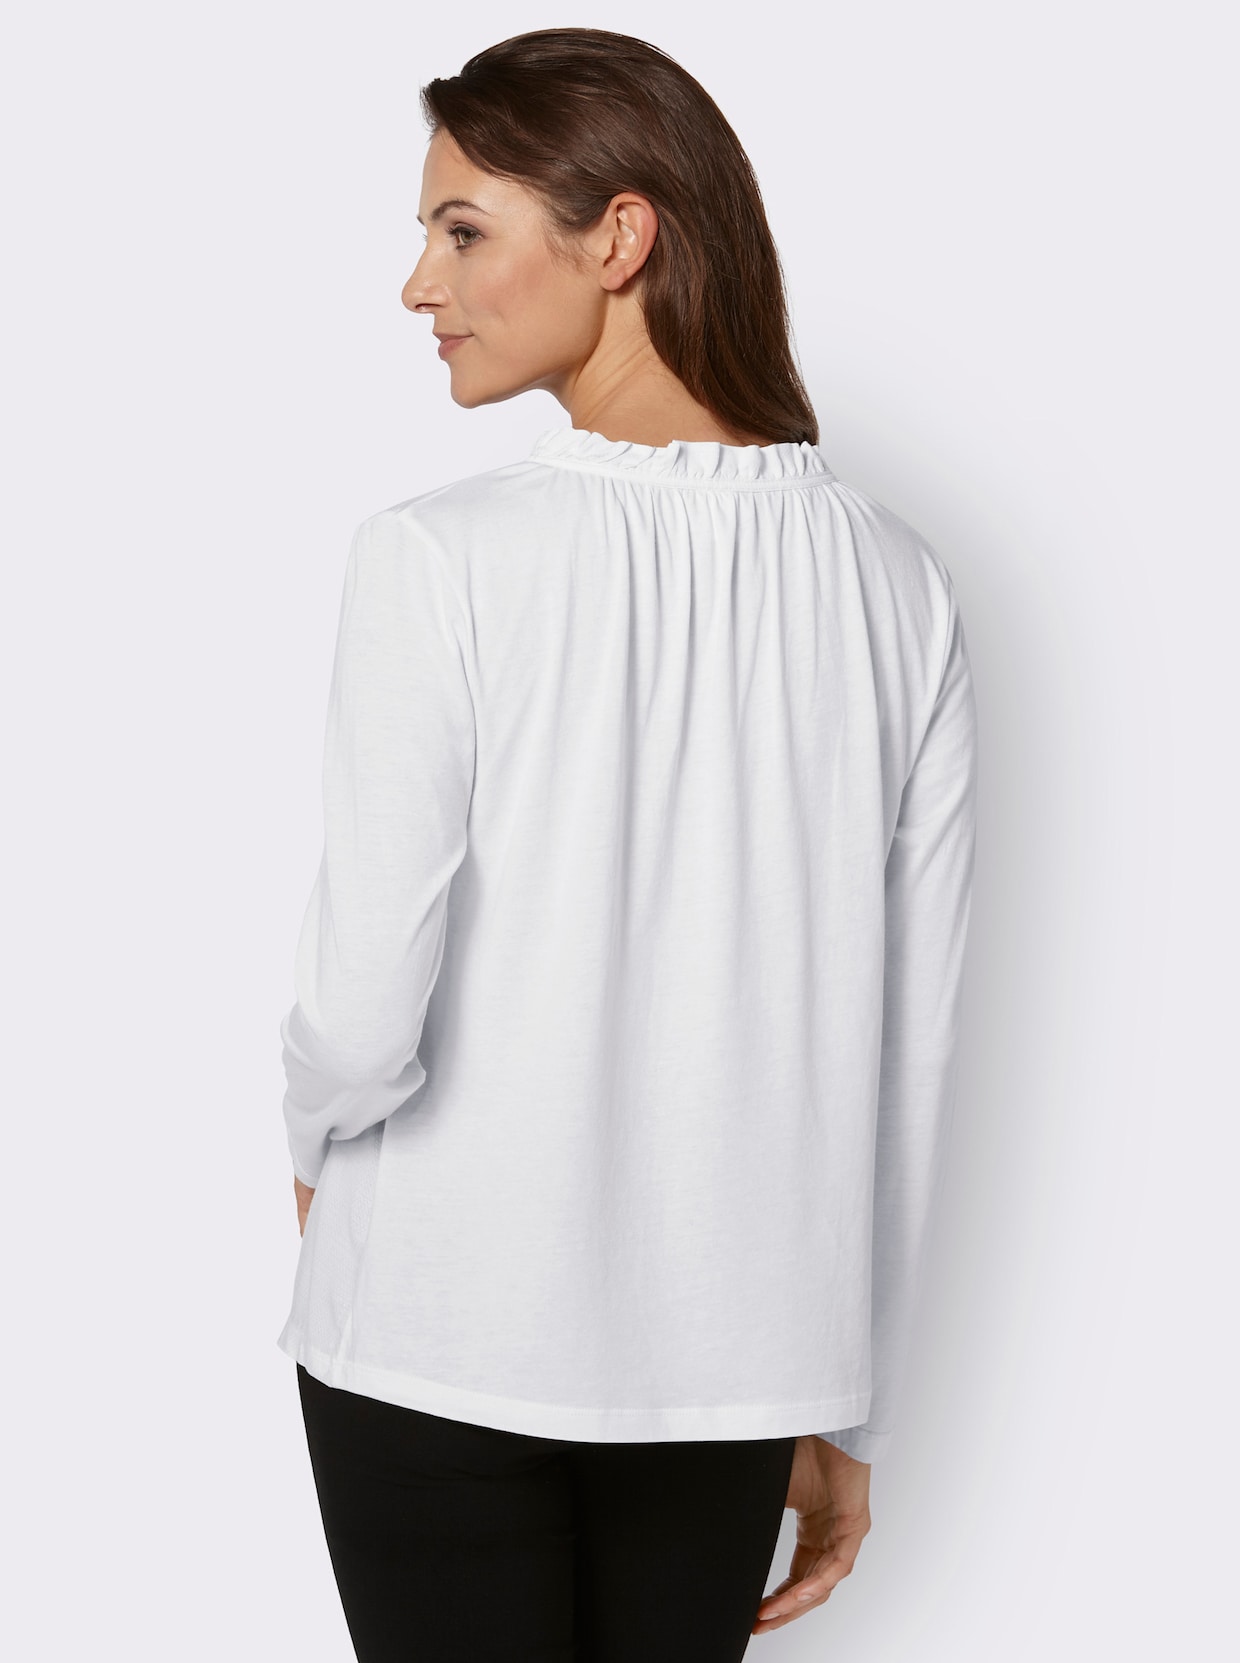 Blúzkové tričko - vlnená biela